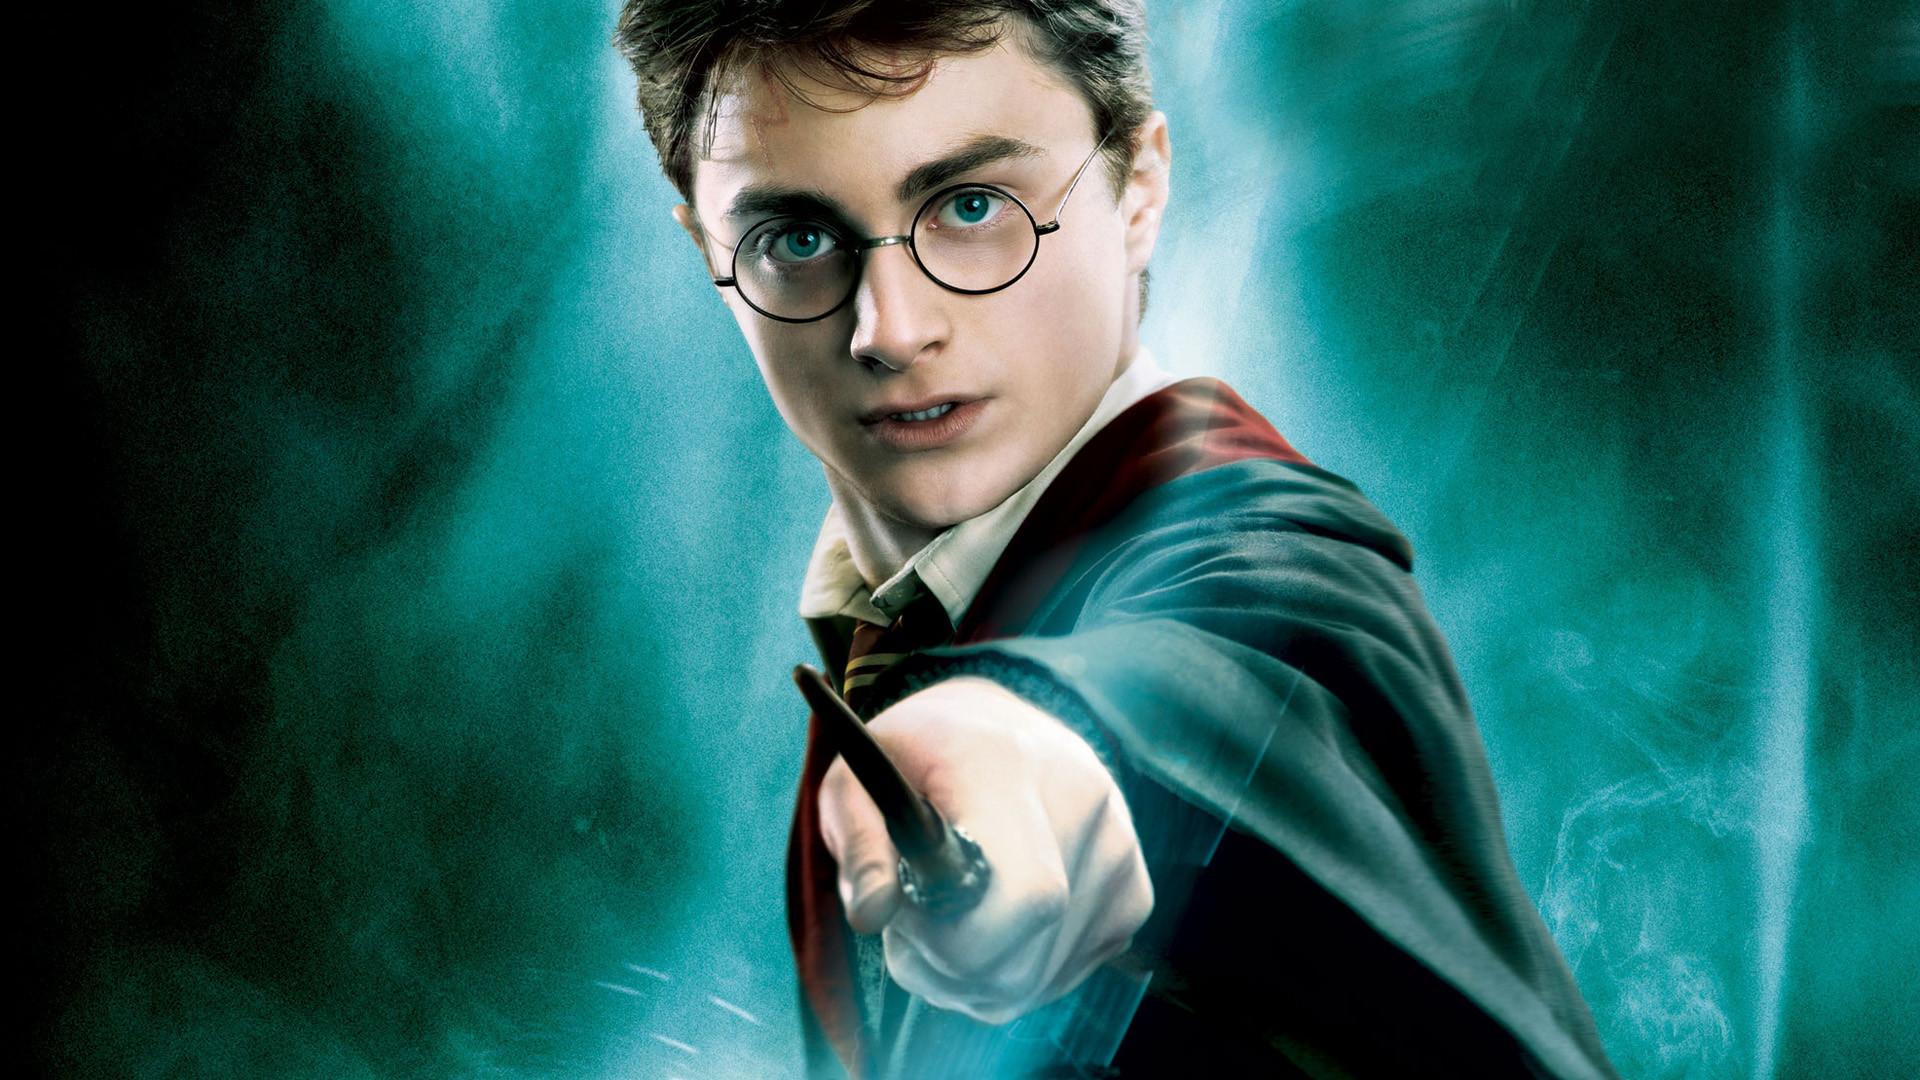 Mời tải về bộ hình nền Harry Potter cho iPhone tuyệt đẹp nhân dịp lễ  Halloween  ftOS